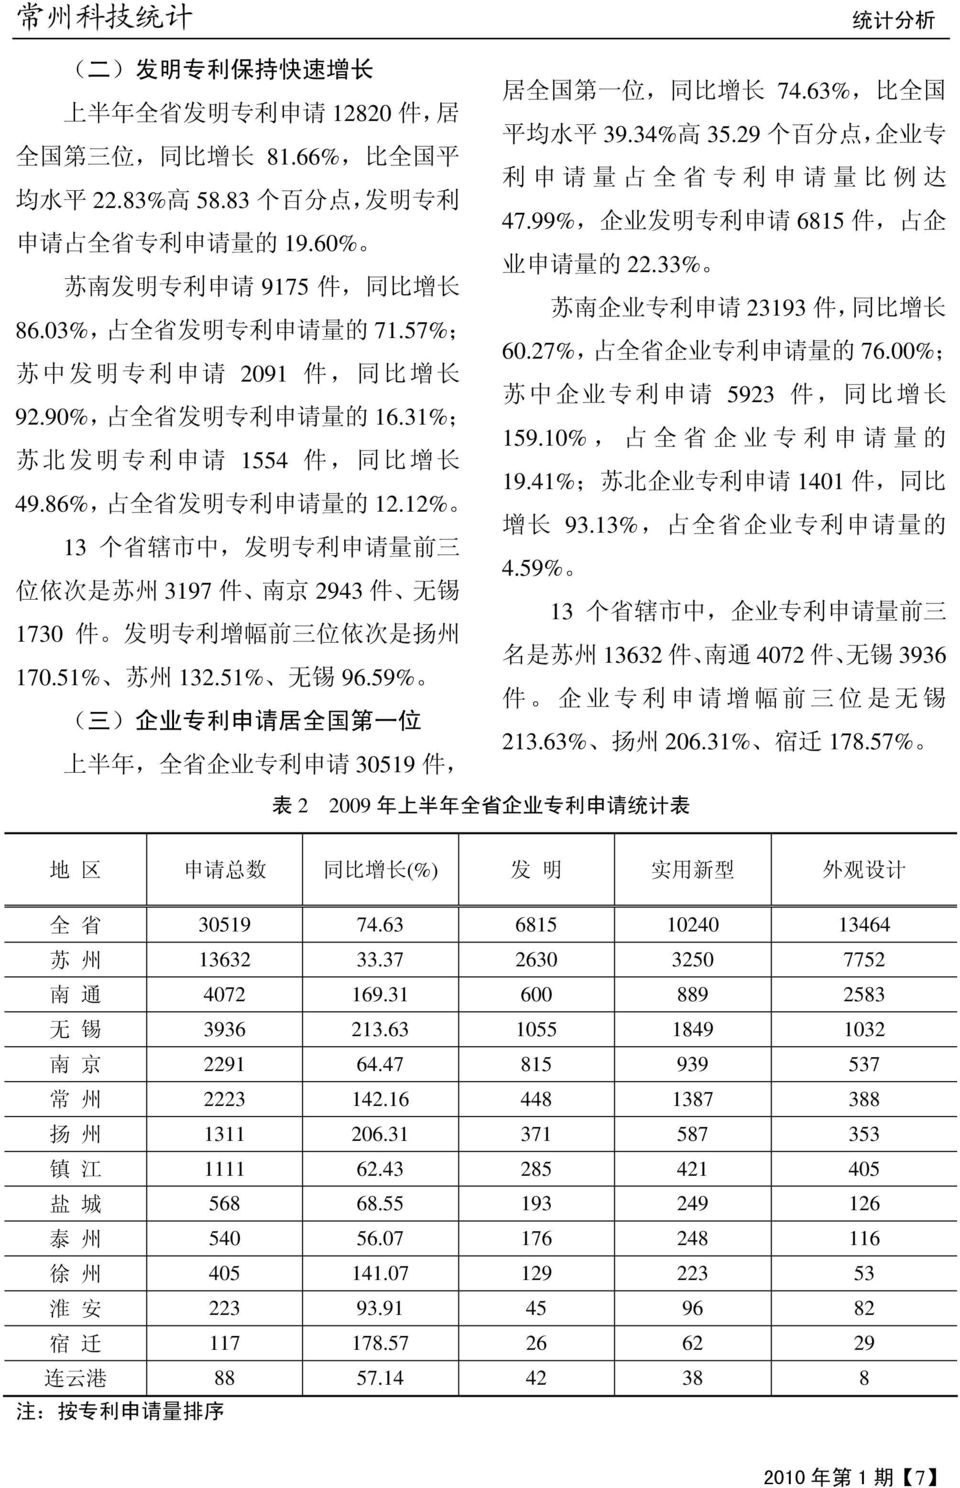 12% 13 个 省 辖 市 中, 发 明 专 利 申 请 量 前 三 位 依 次 是 苏 州 3197 件 南 京 2943 件 无 锡 1730 件 发 明 专 利 增 幅 前 三 位 依 次 是 扬 州 170.51% 苏 州 132.51% 无 锡 96.